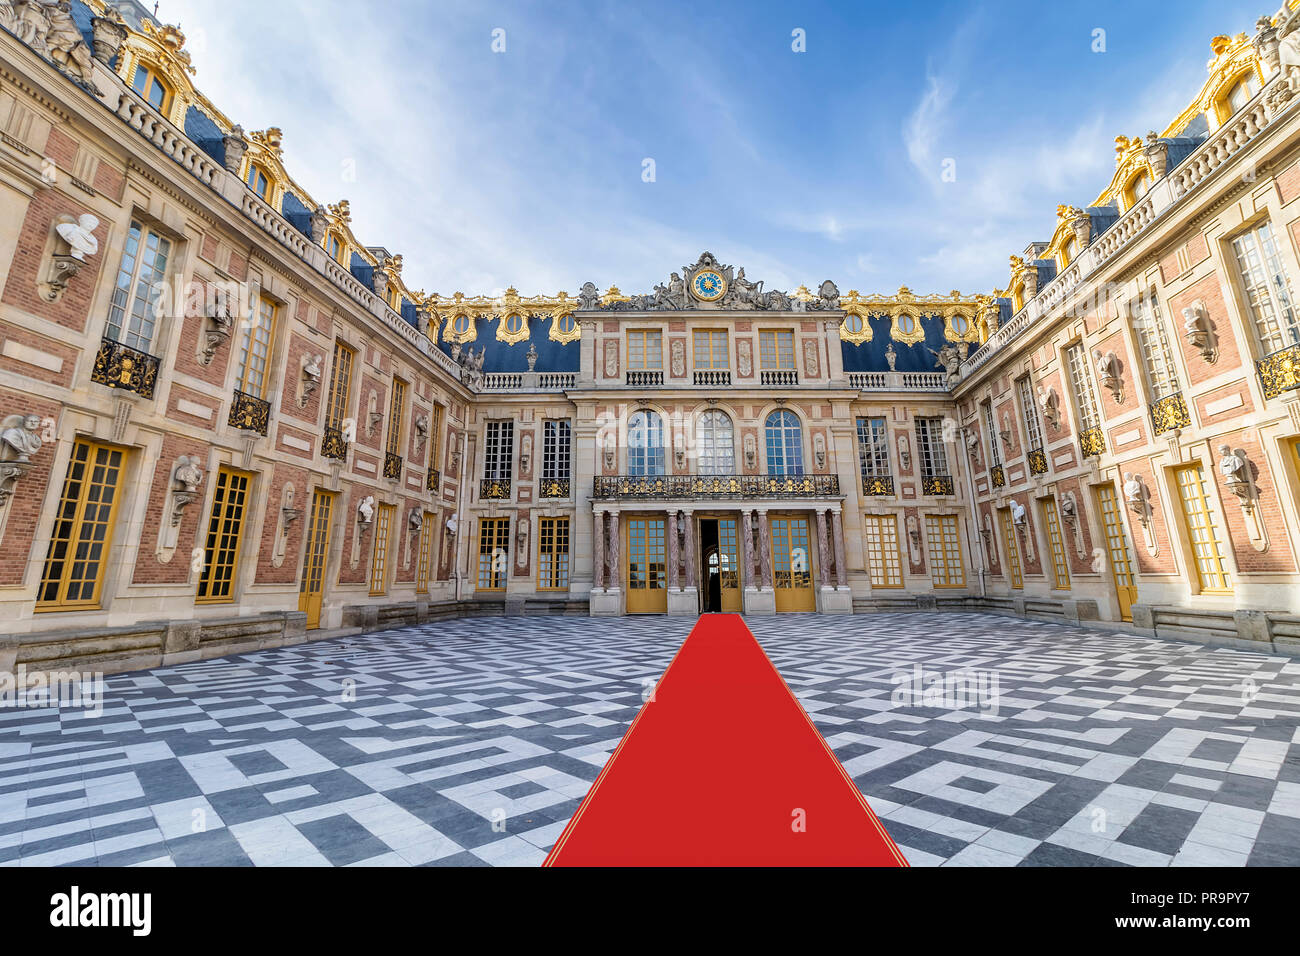 All'interno di Chateau de Versailles (Palazzo di Versailles) vicino a Parigi. Palace Versailles era un castello reale. Foto Stock